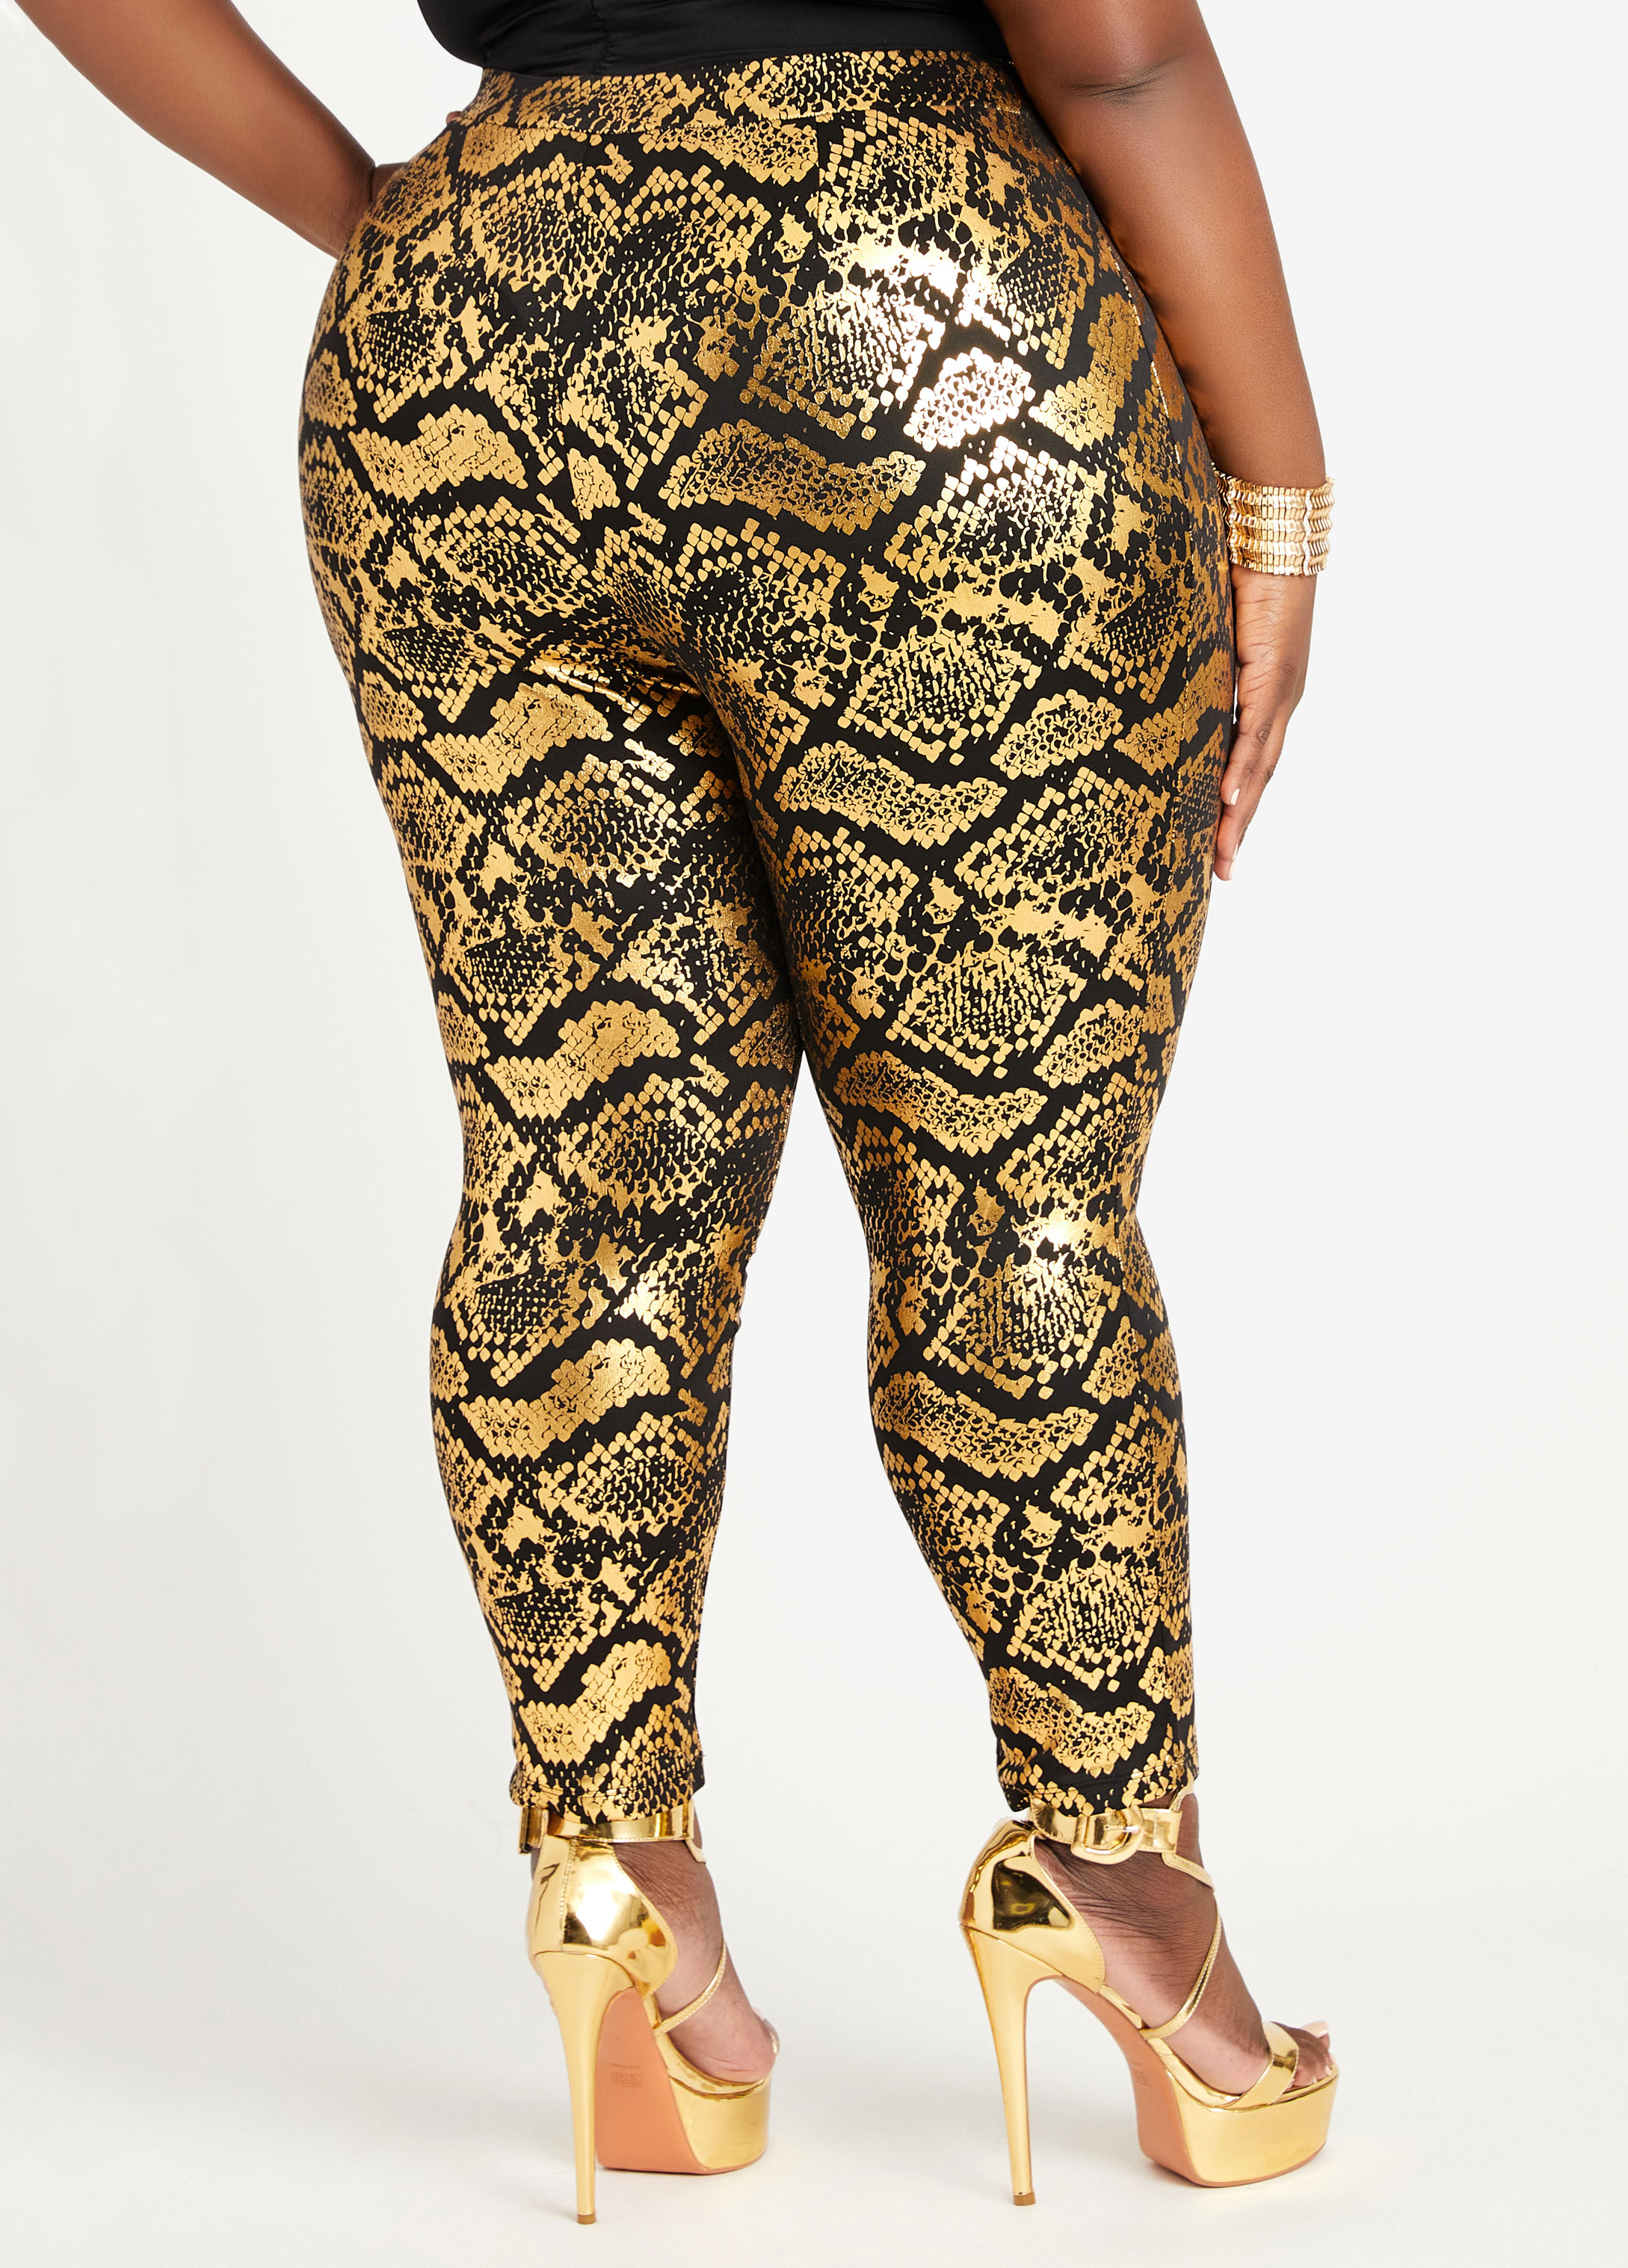 White House Black Market, gold faux snakeskin leggings, size 14S